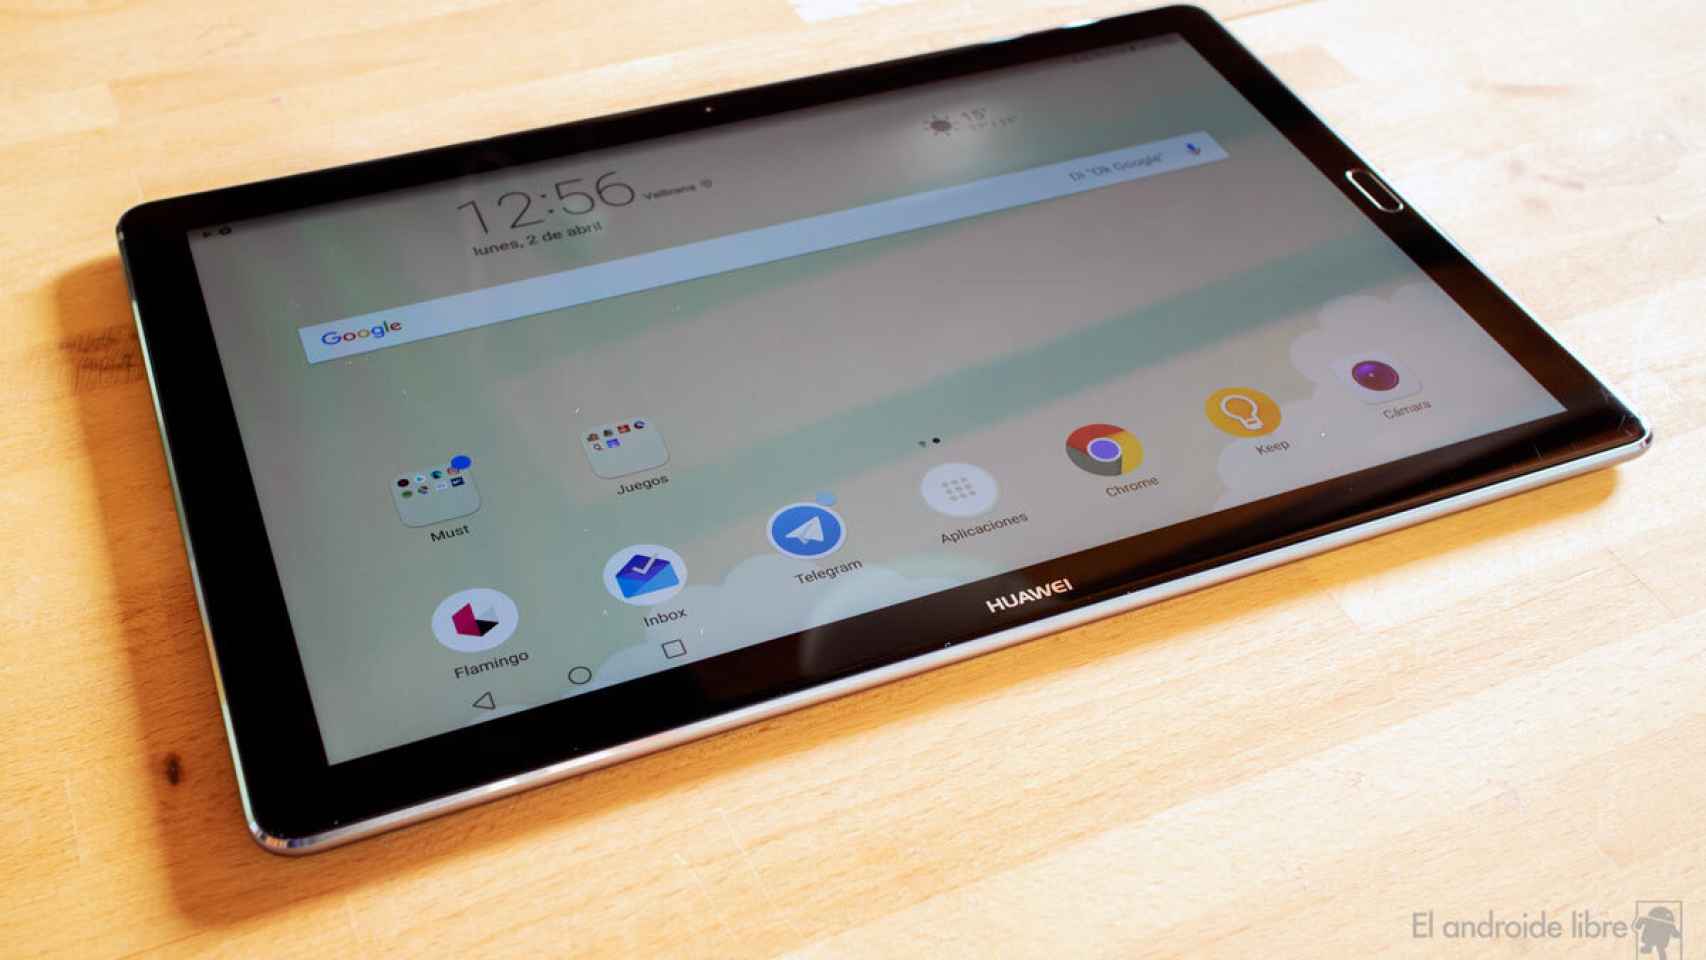 Huawei MEDIAPAD M5: Un tablet para CONSUMIR y CREAR contenido 